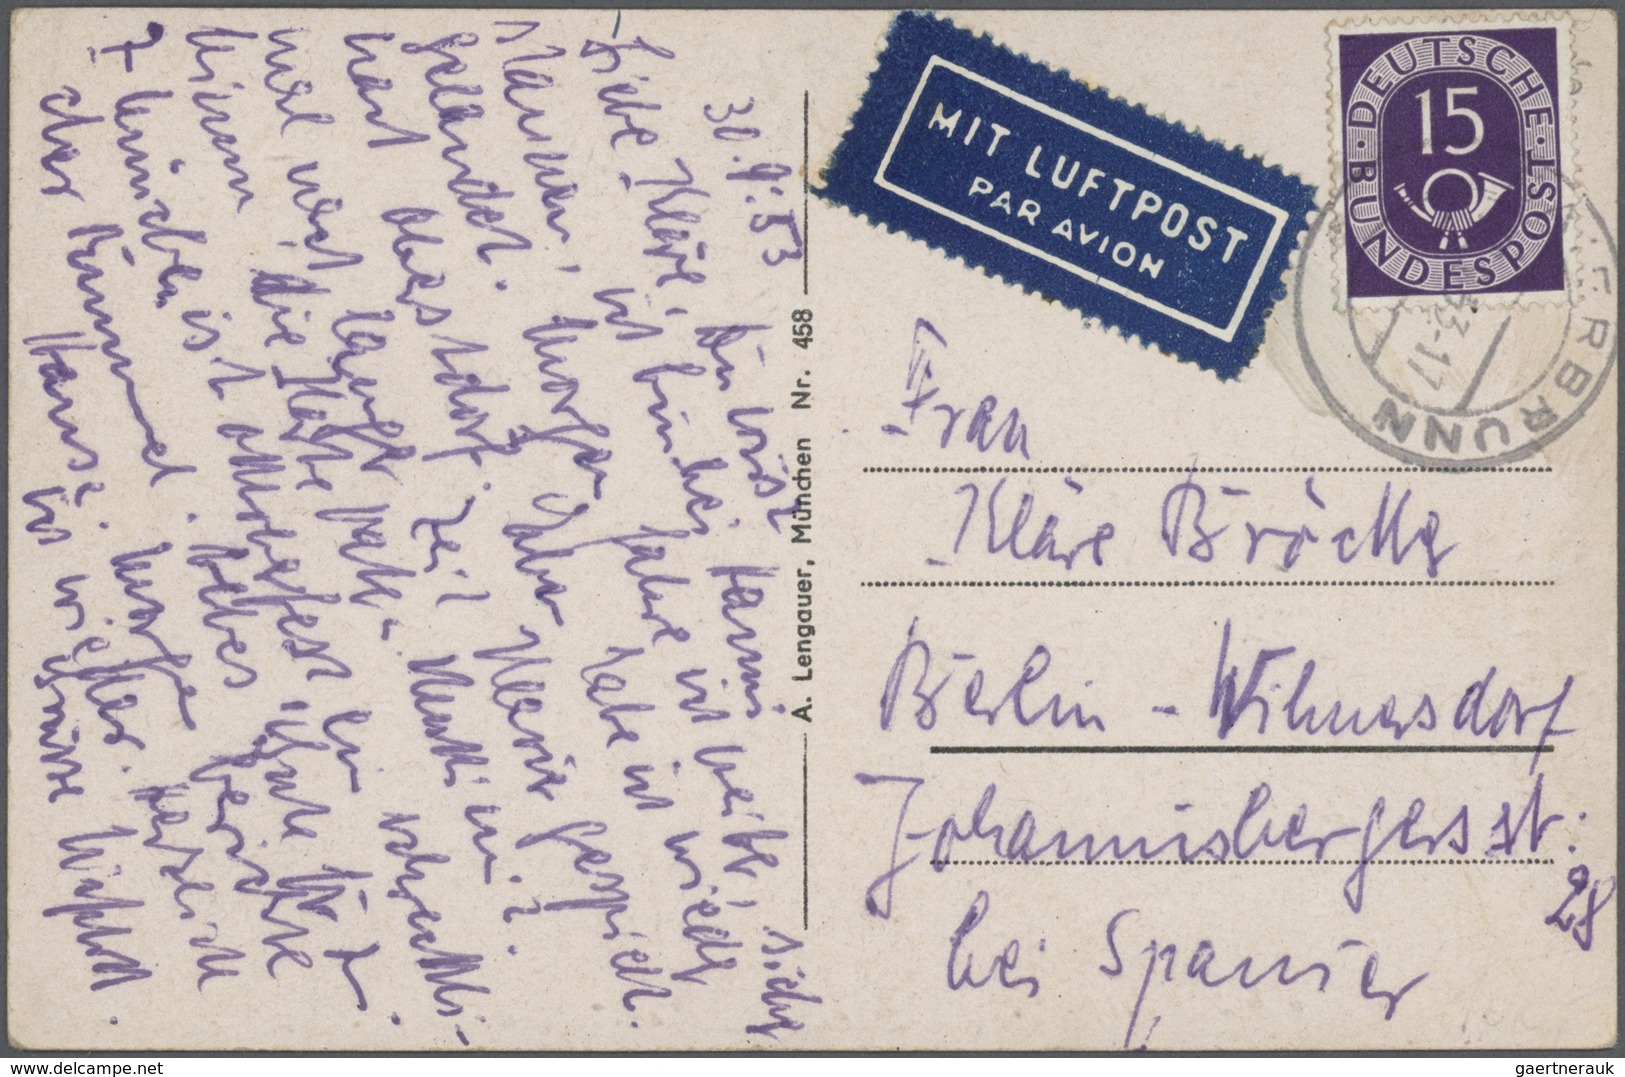 32671 Bundesrepublik Deutschland: 1949/1990 (ca.), vielseitiger Bestand von ca. 420 Briefen und Karten mit